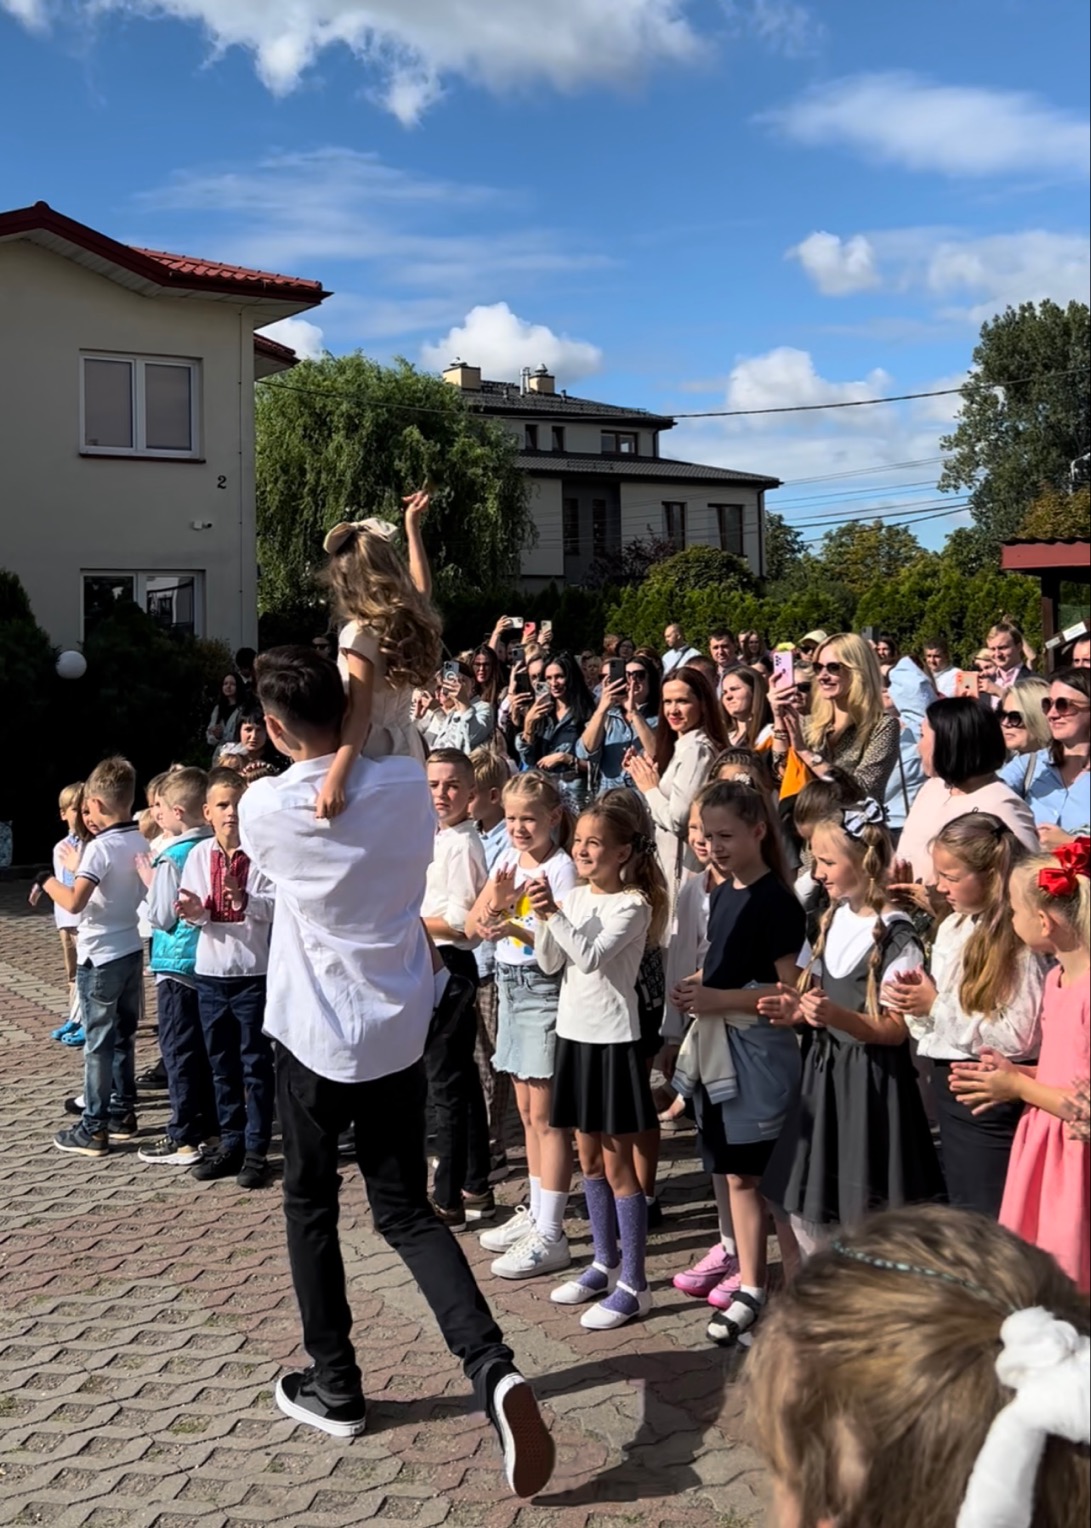 Состоялось торжественное открытие школы для украинских детей в Варшаве по инициативе ECCU, EUCON стал юридическим партнером проекта